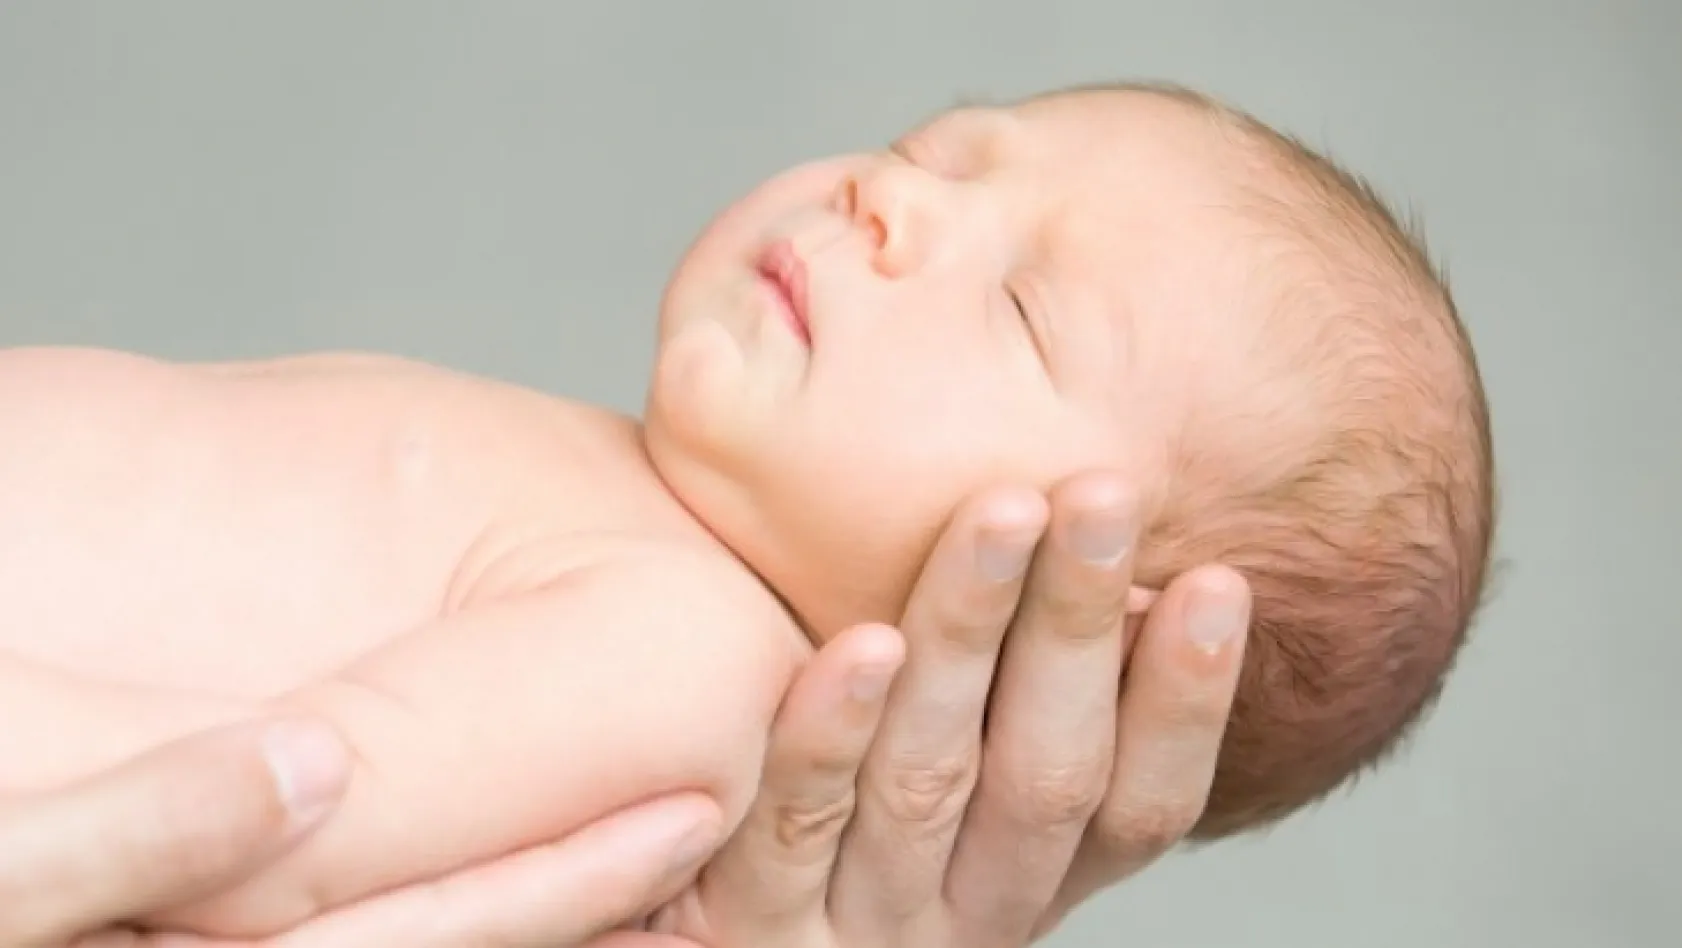 Tüp bebek tedavisi için kimler uygun?